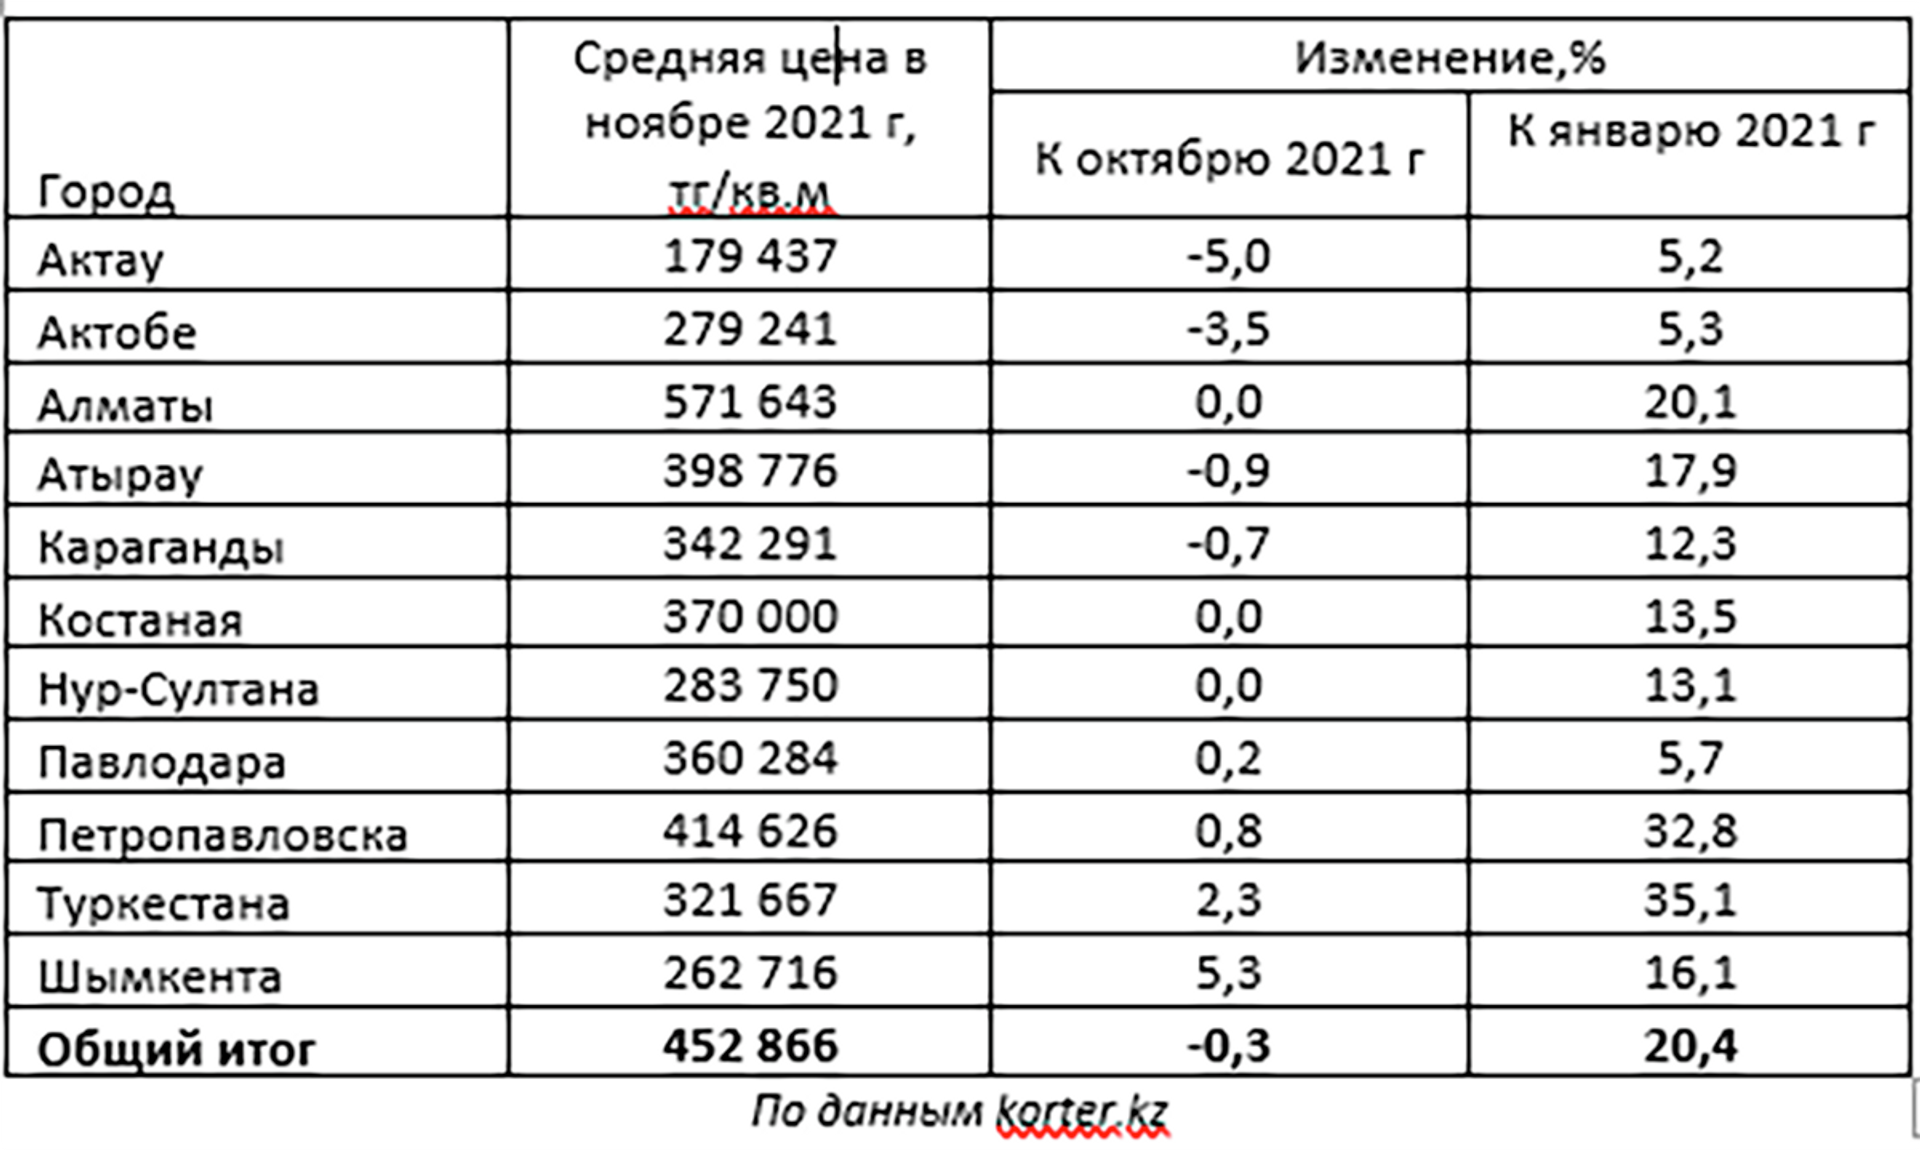 Изменение цен на первичное жилье в городах Казахстана в 2021 году - Sputnik Казахстан, 1920, 01.02.2022